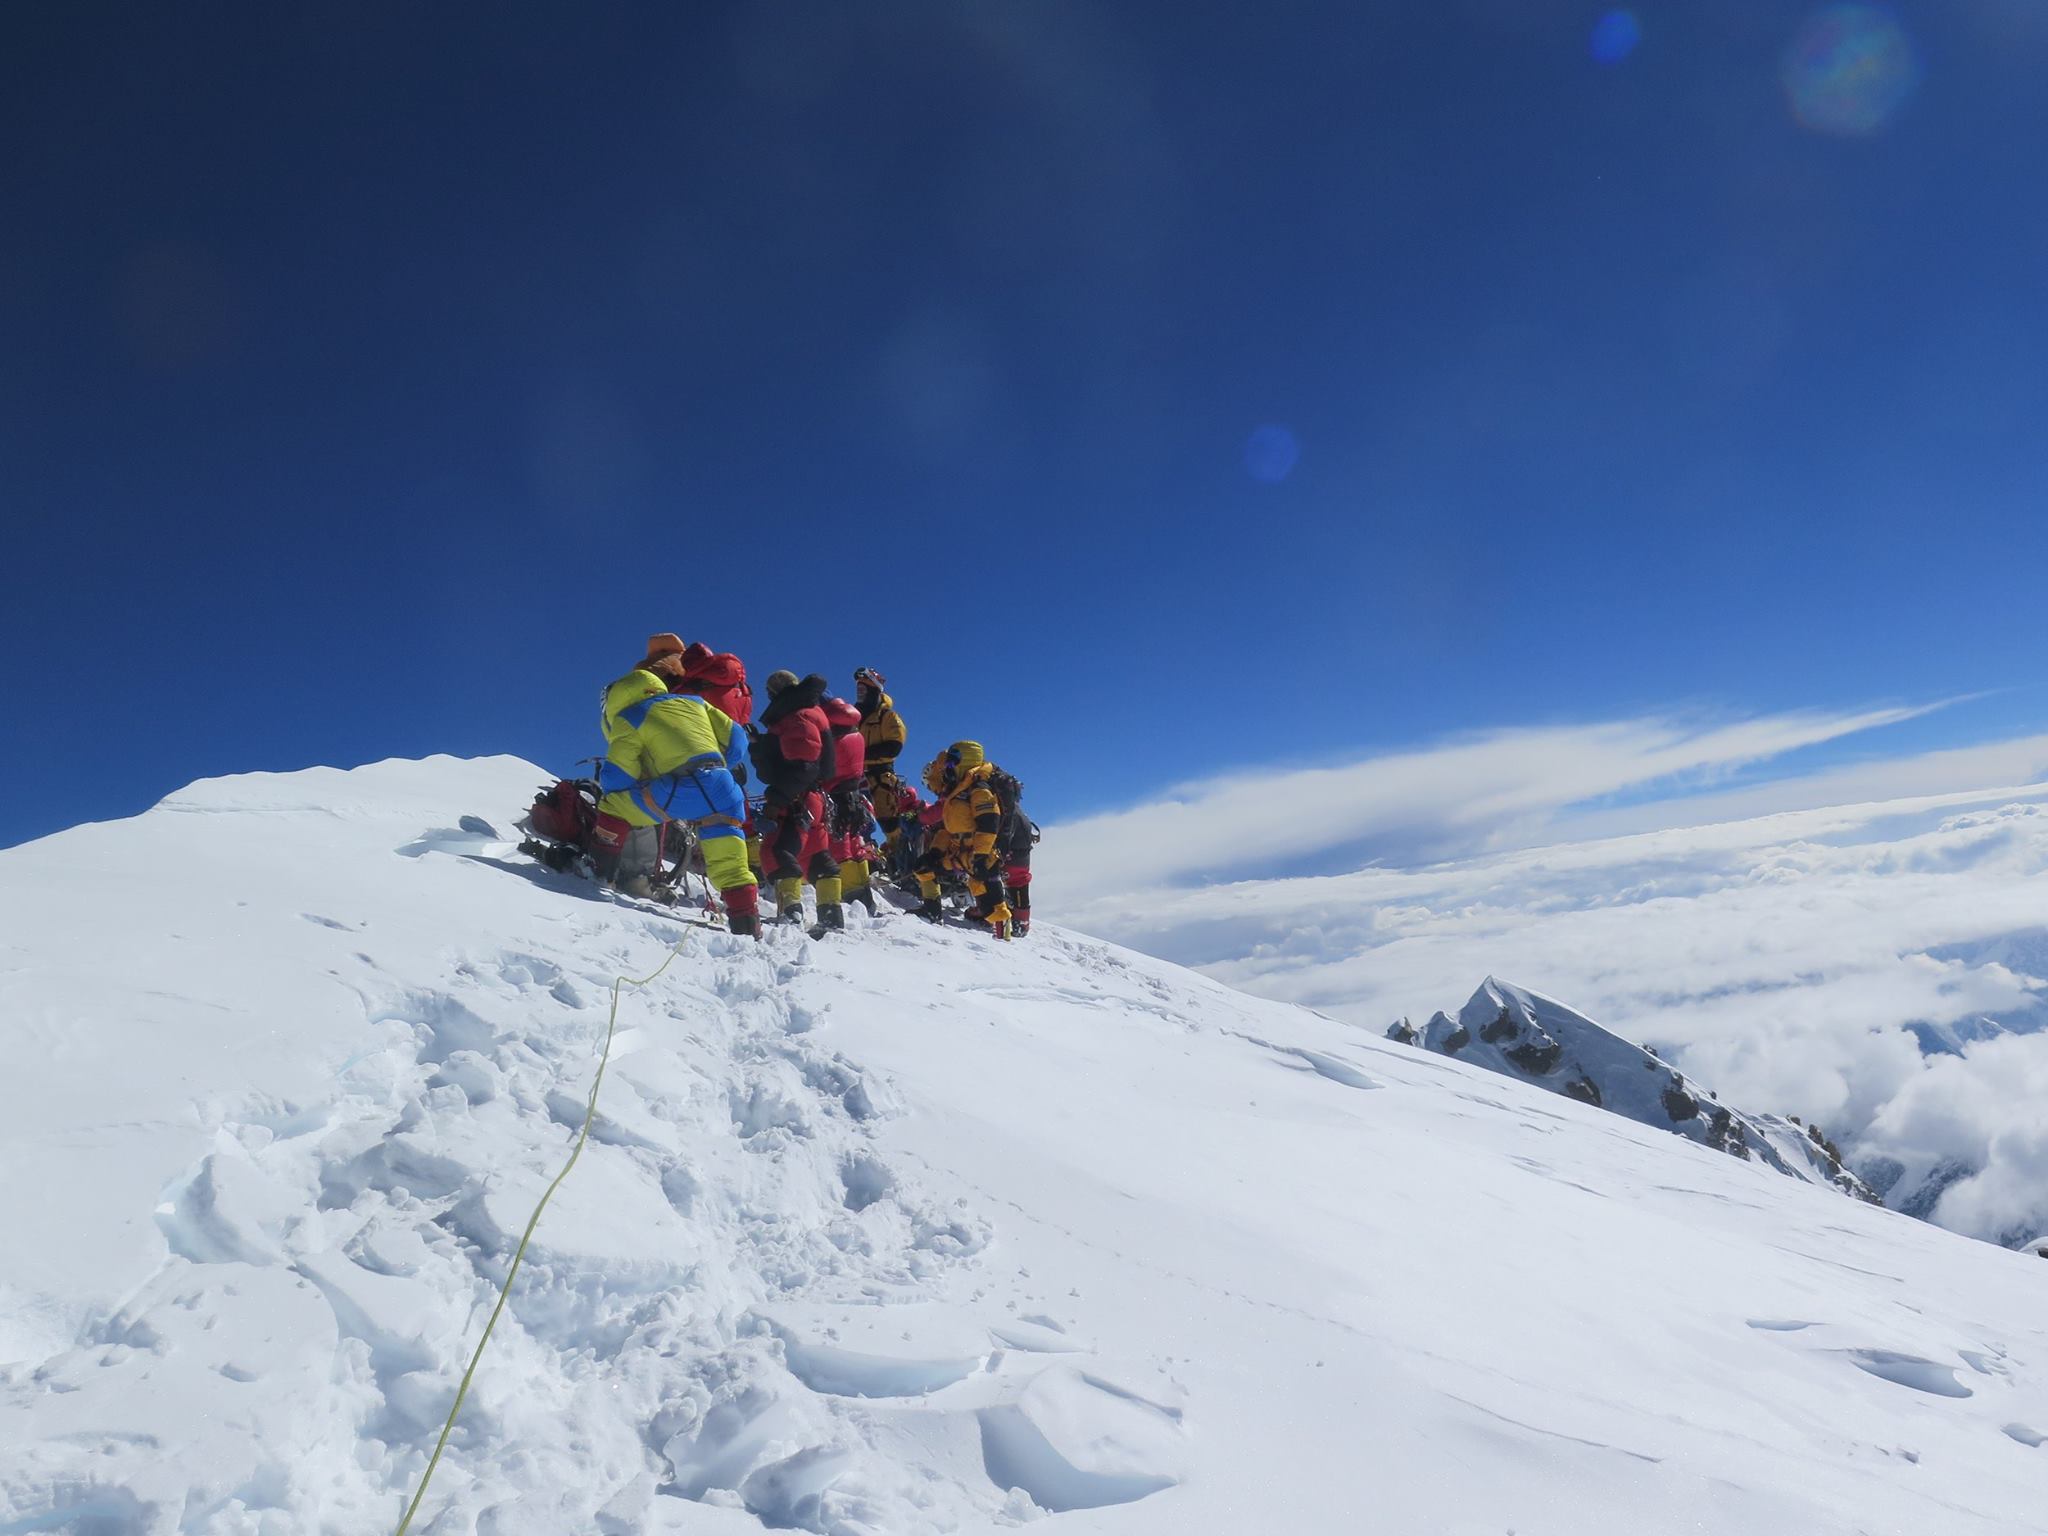 Mingma Gyalje Sherpa on K2 in 2017